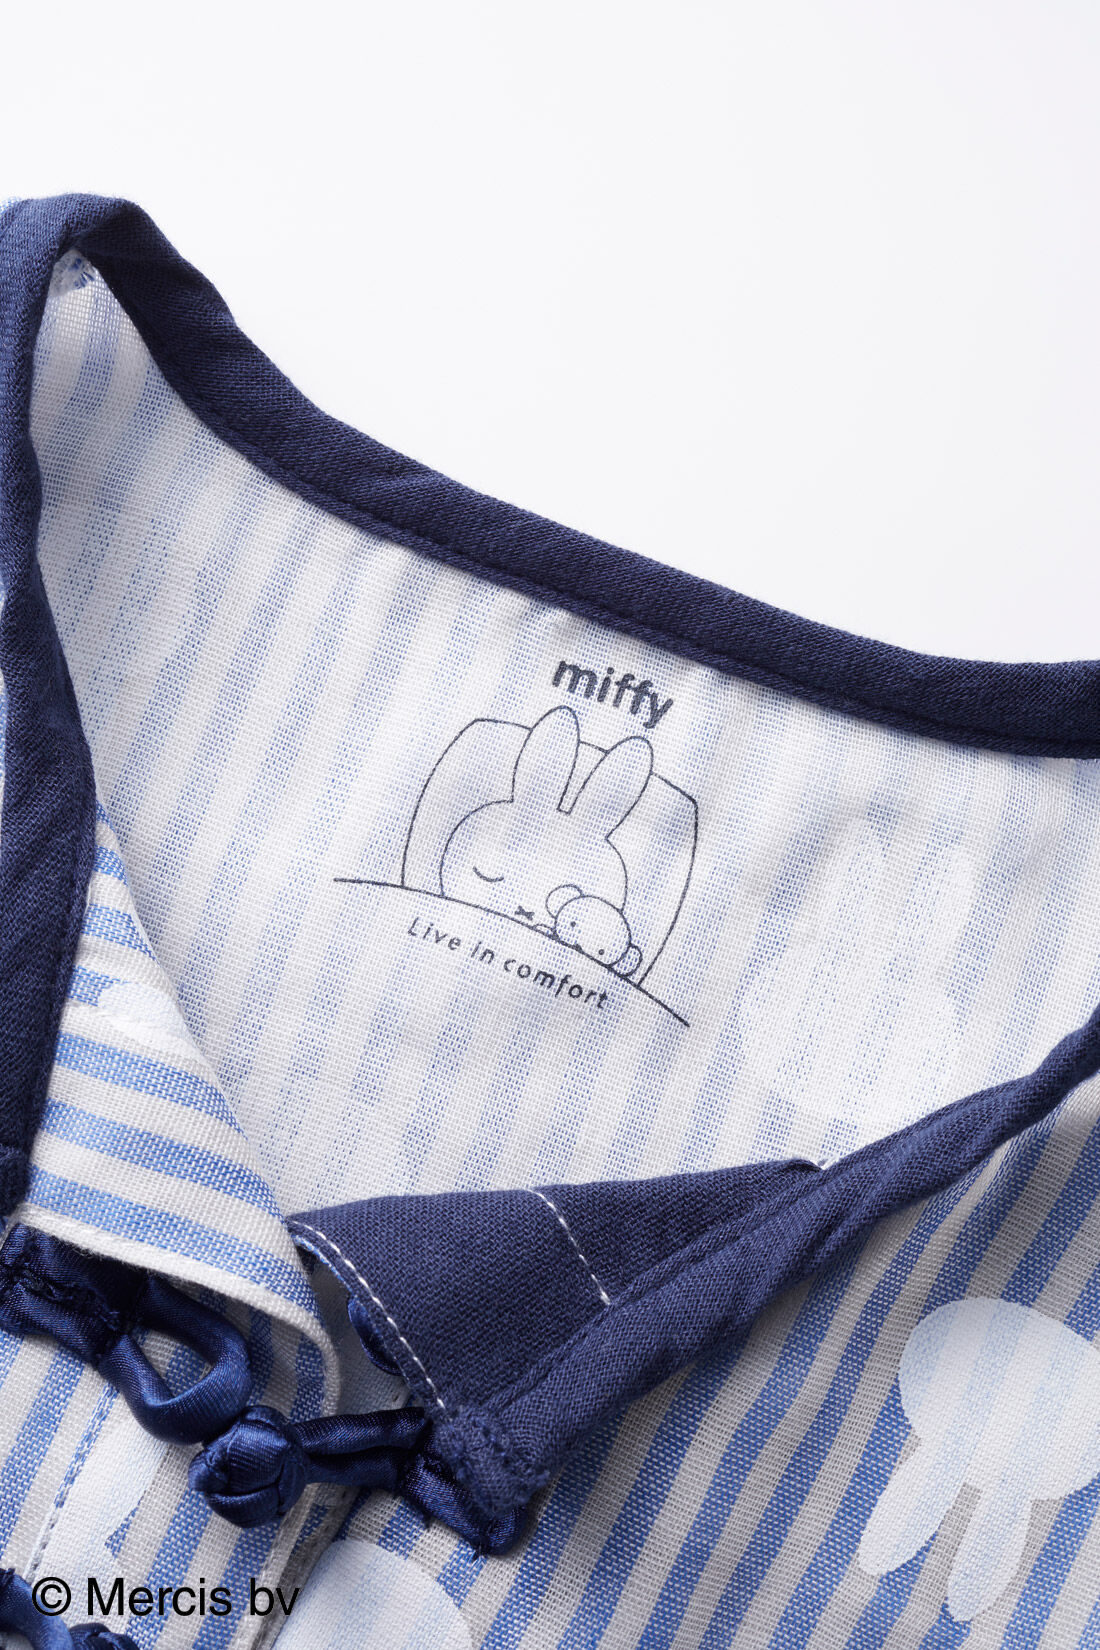 フェリシモMama|リブ イン コンフォート ×miffy　ふわふわダブルガーゼのストライプ半袖キッズセットアップ|衿ぐり下はかわいいミッフィーのプリント